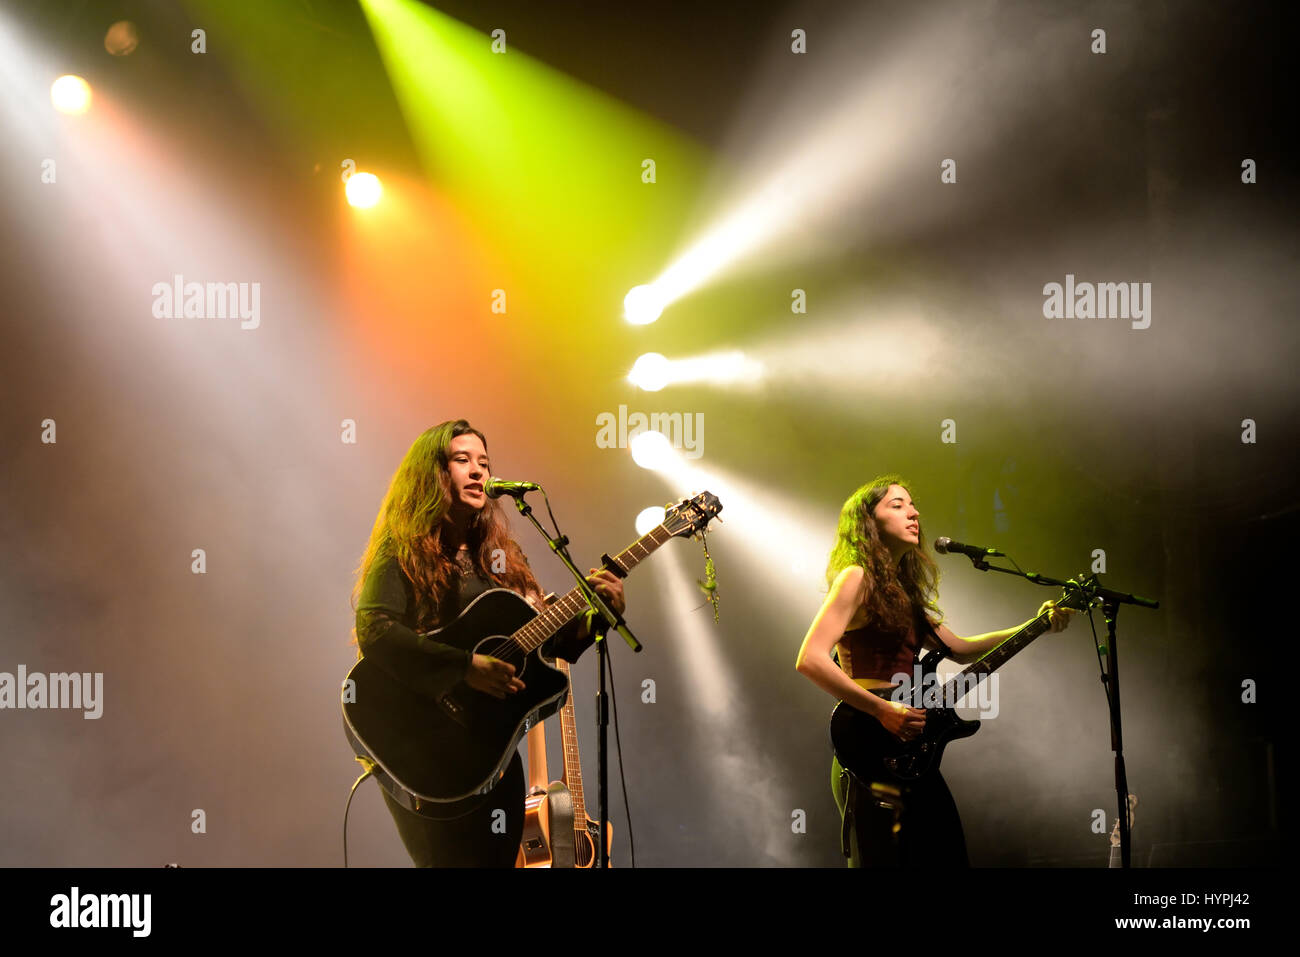 BARCELONA - 21 de abril: Kinsale (banda) en concierto en el escenario de Razzmatazz el 21 de abril de 2016 en Barcelona, España. Foto de stock